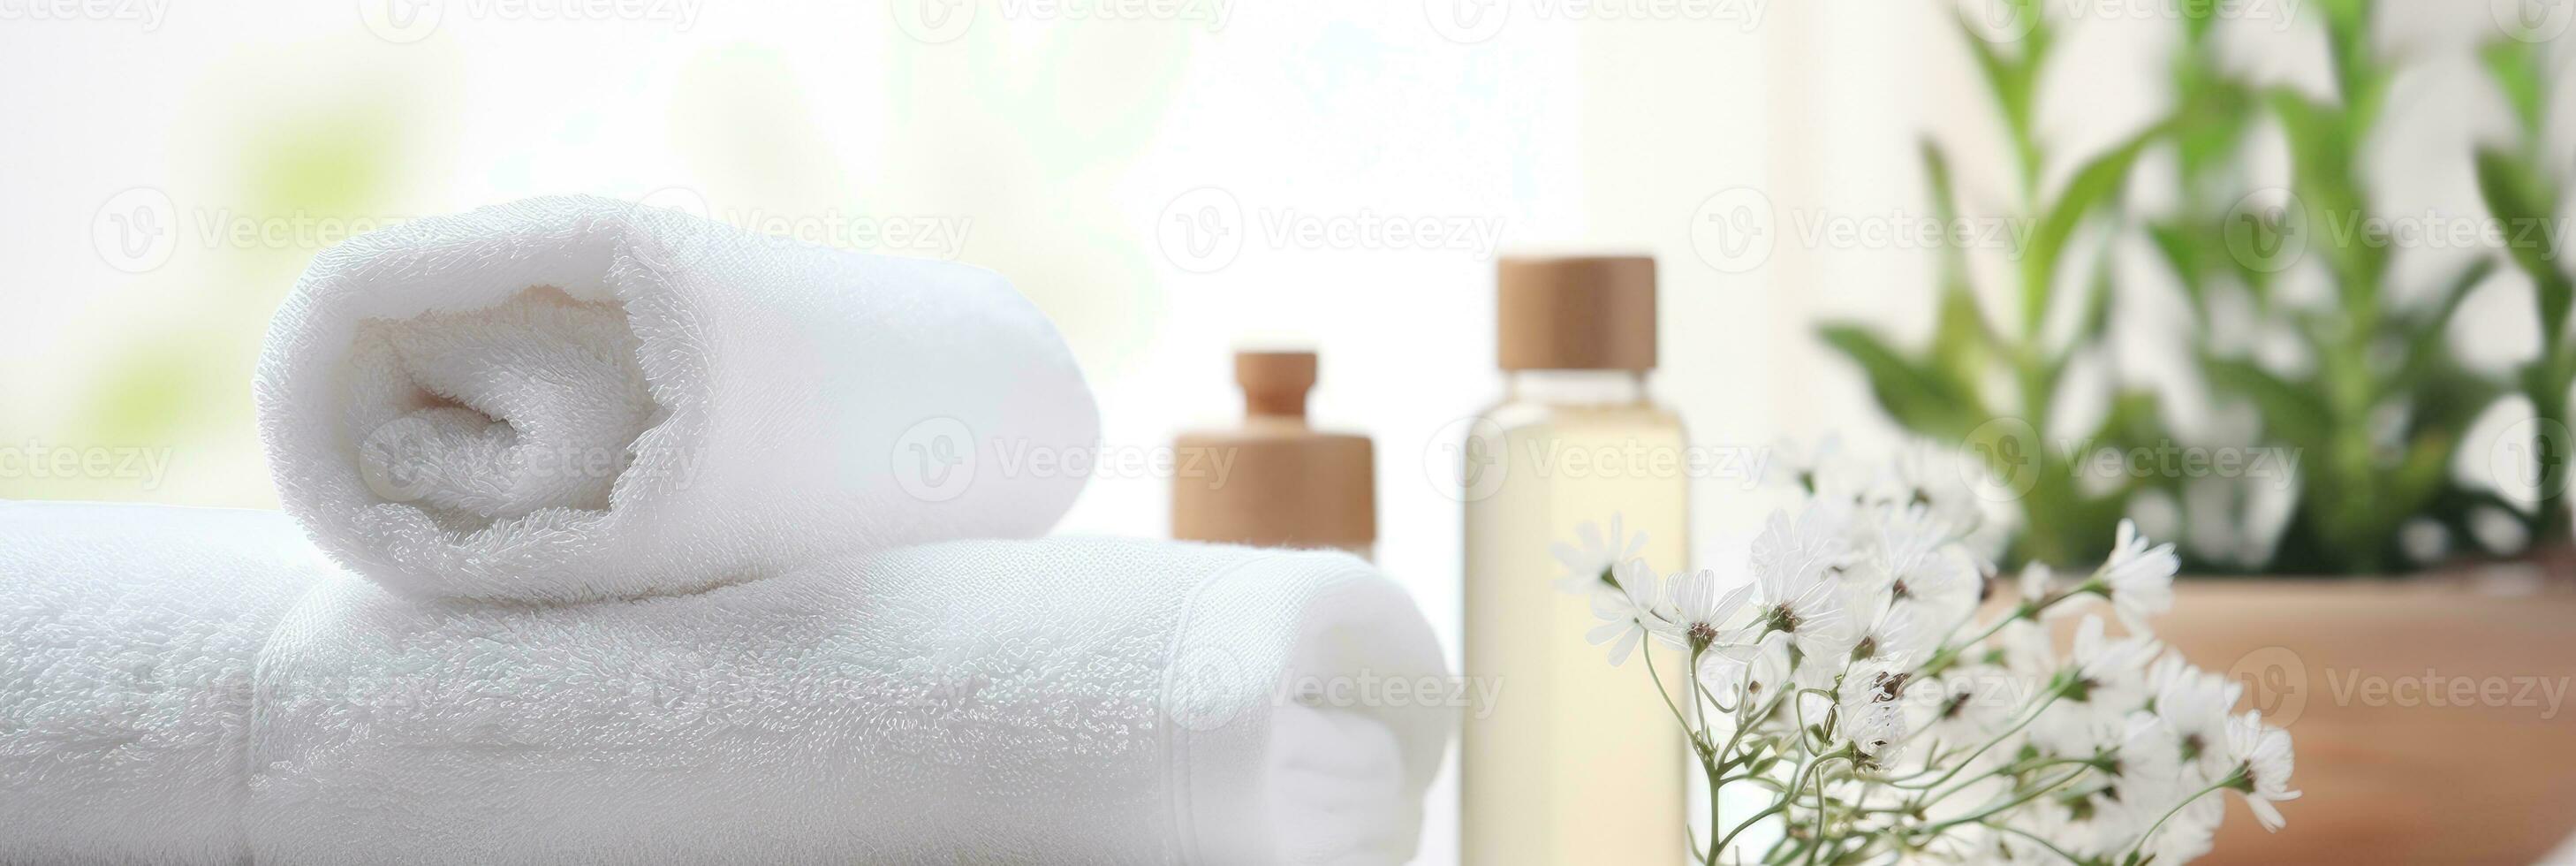 artículos de aseo, jabón, toalla en borroso blanco baño spa antecedentes. foto